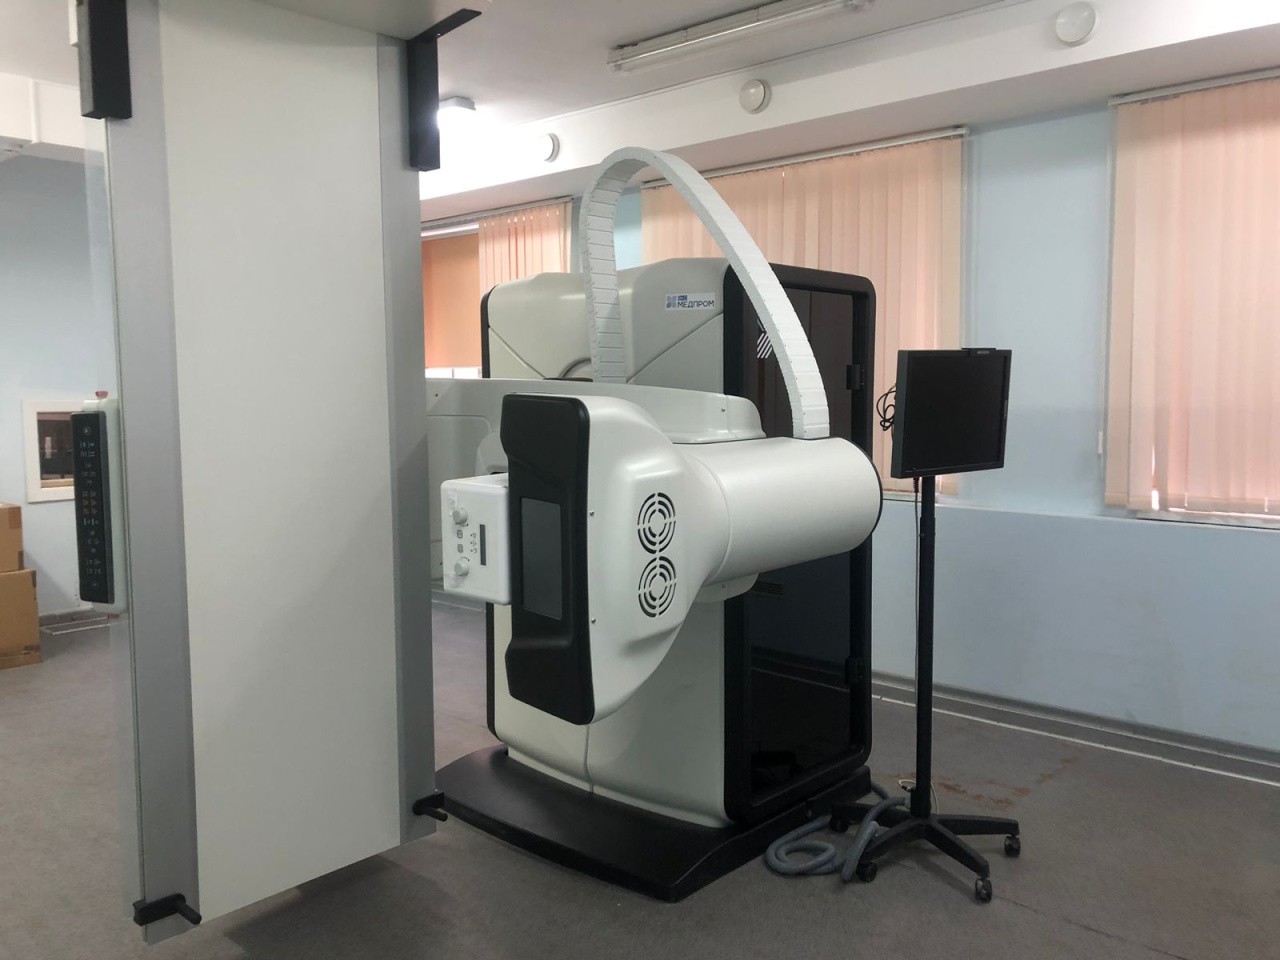 В Светлогорске и Янтарном запустили новые рентген-аппараты